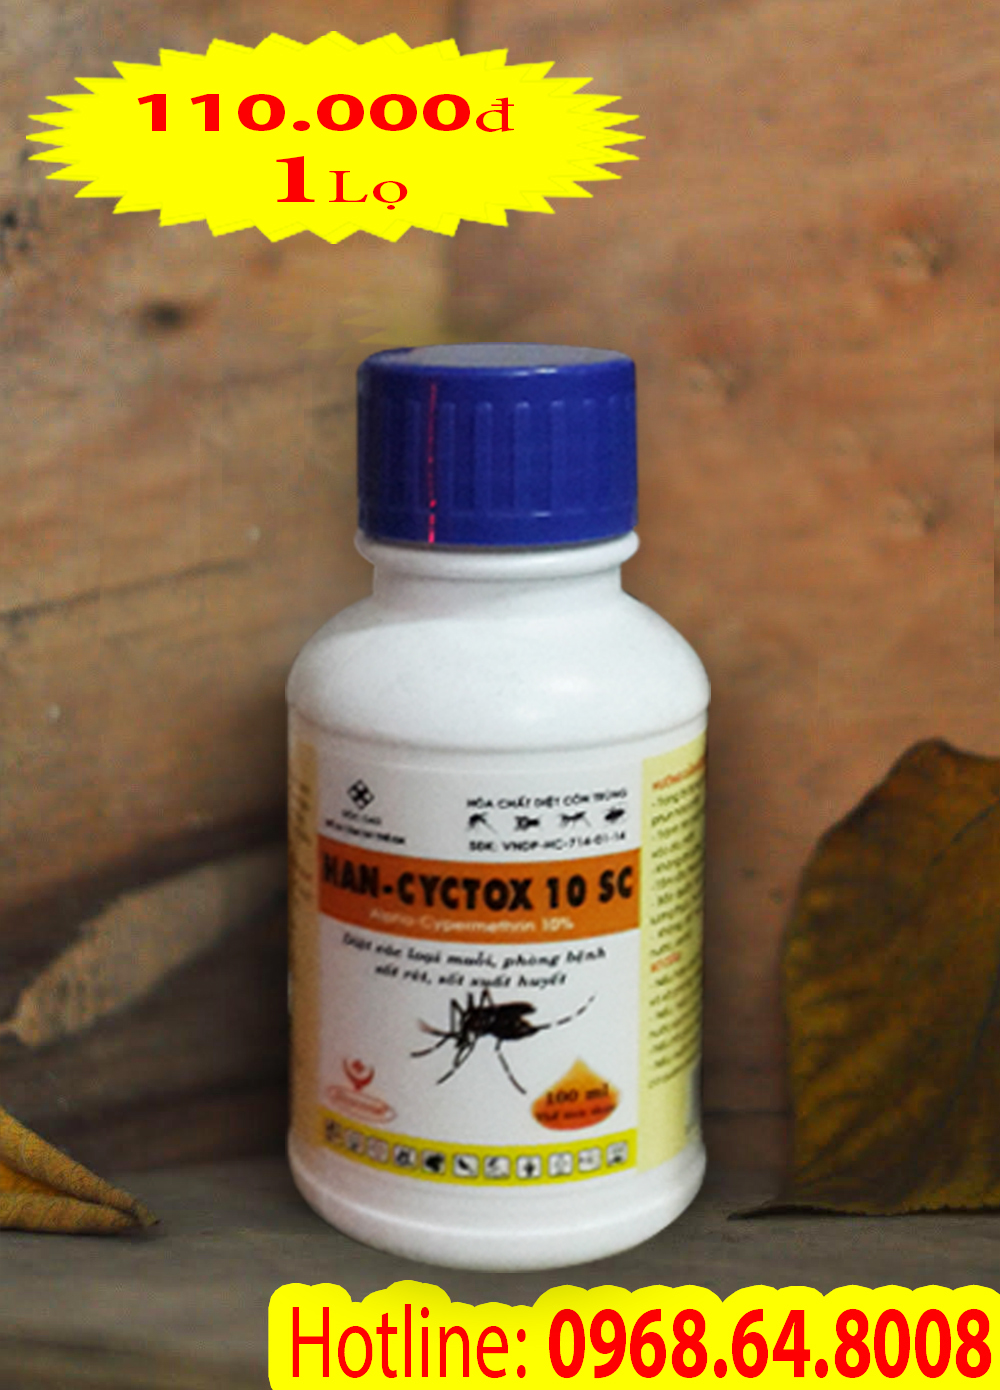 Han Cyctox 10SC (50ml) - (Hàng VIỆT NAM) - Thuốc diệt côn trùng, muỗi, gián, ruồi, kiến, bọ chét...